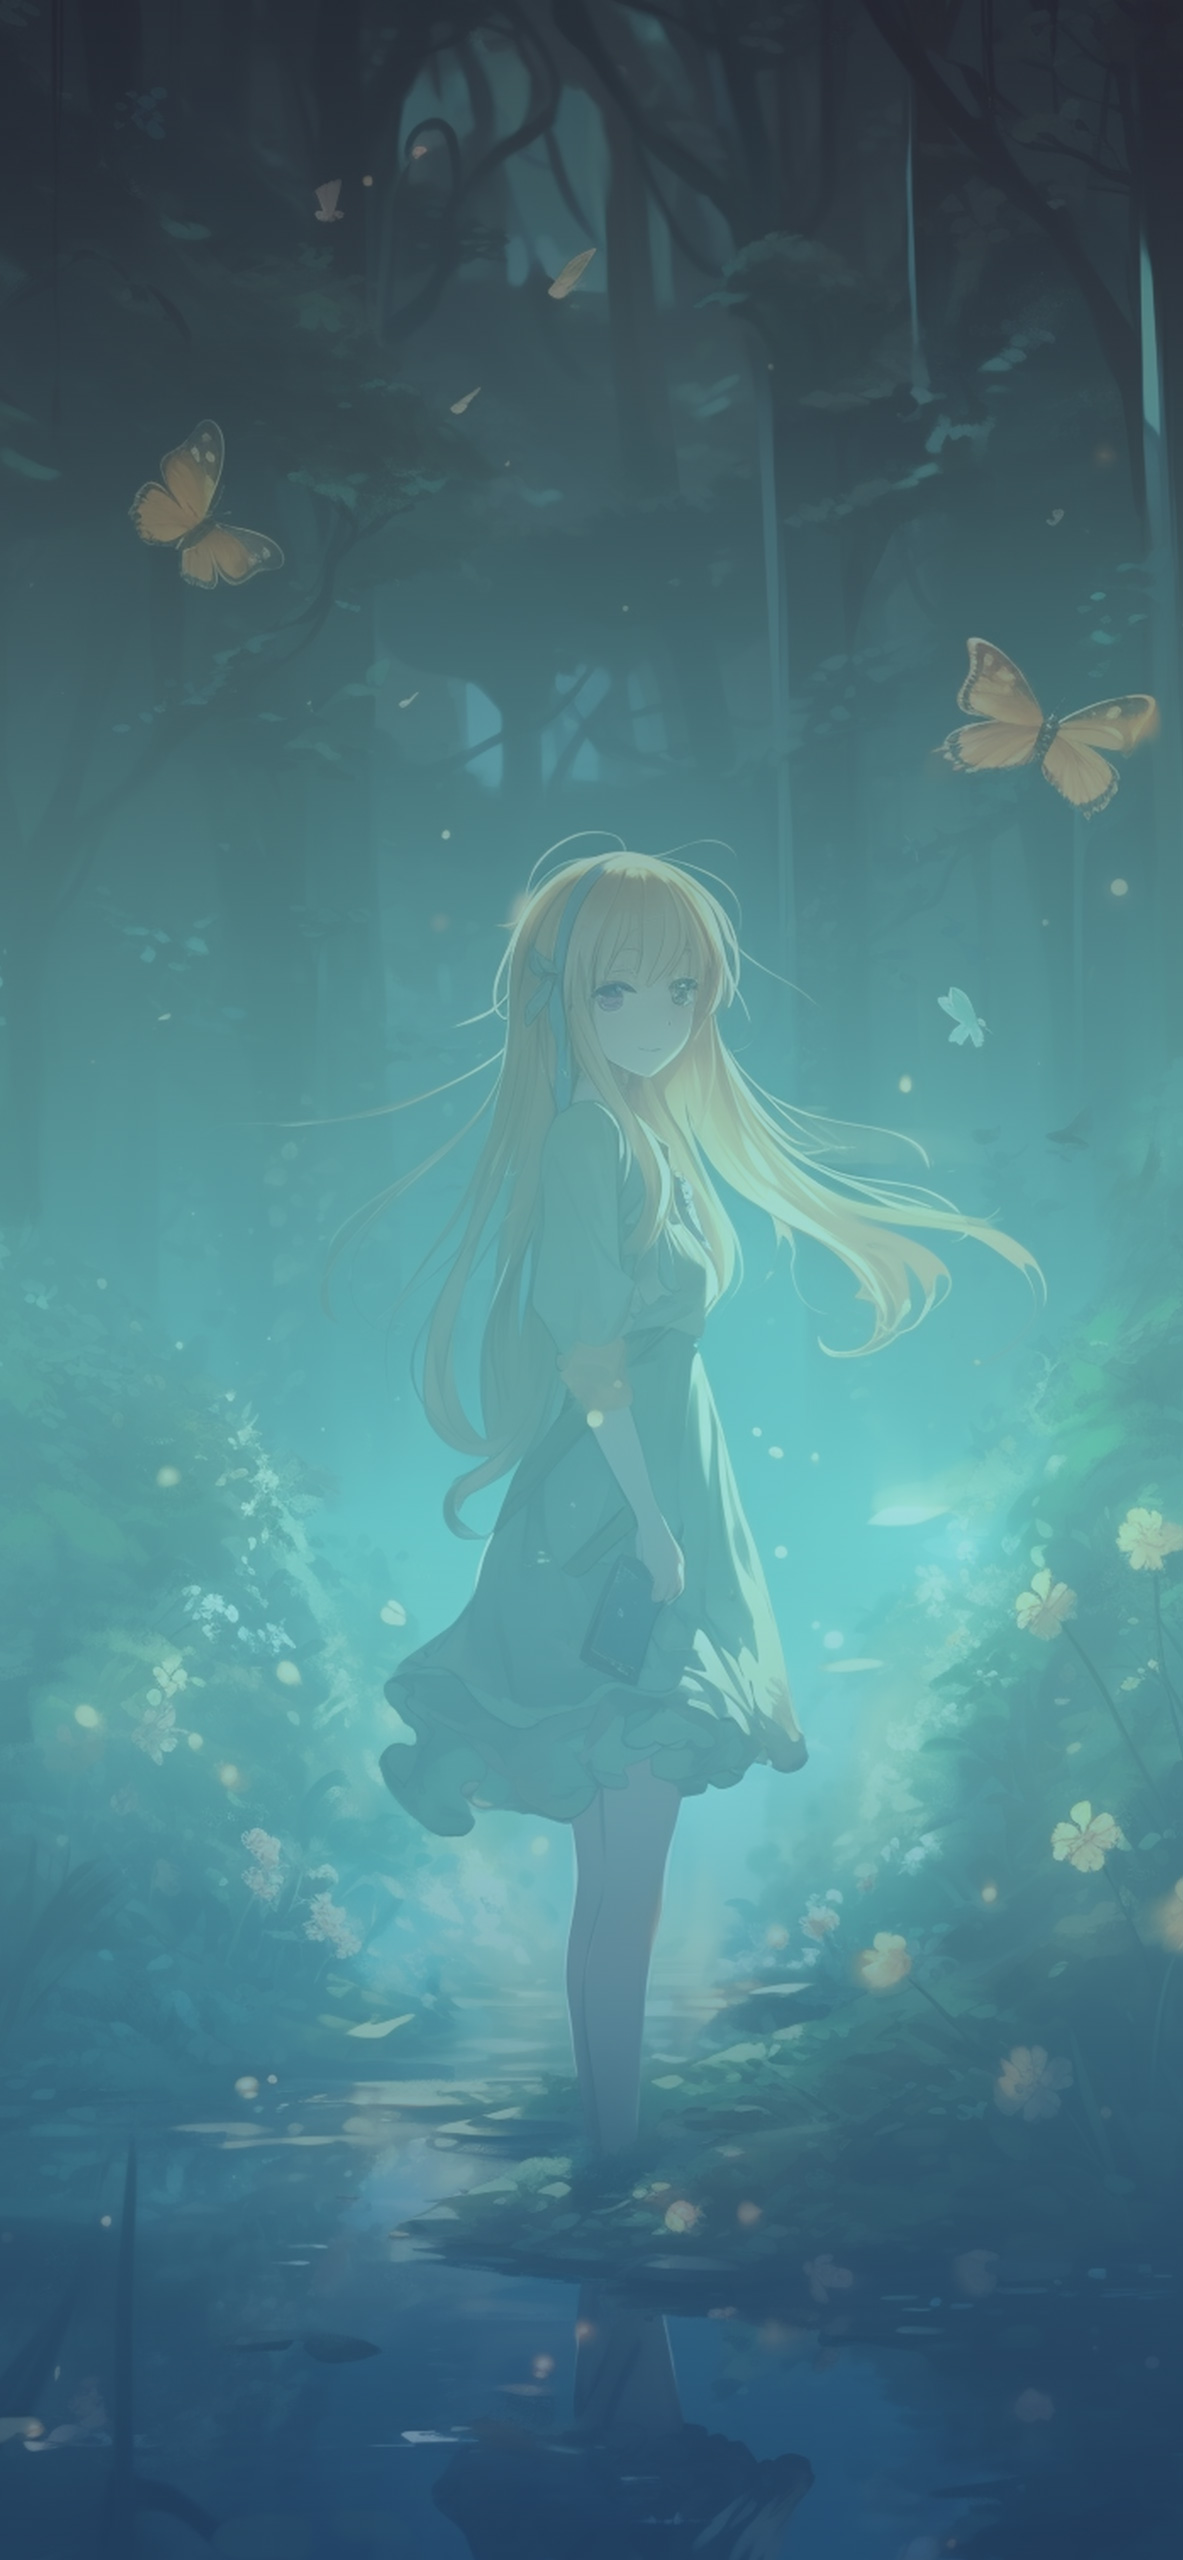 Anime Girl in Magic Forest Wallpaper Anime Girl Wallpaper for